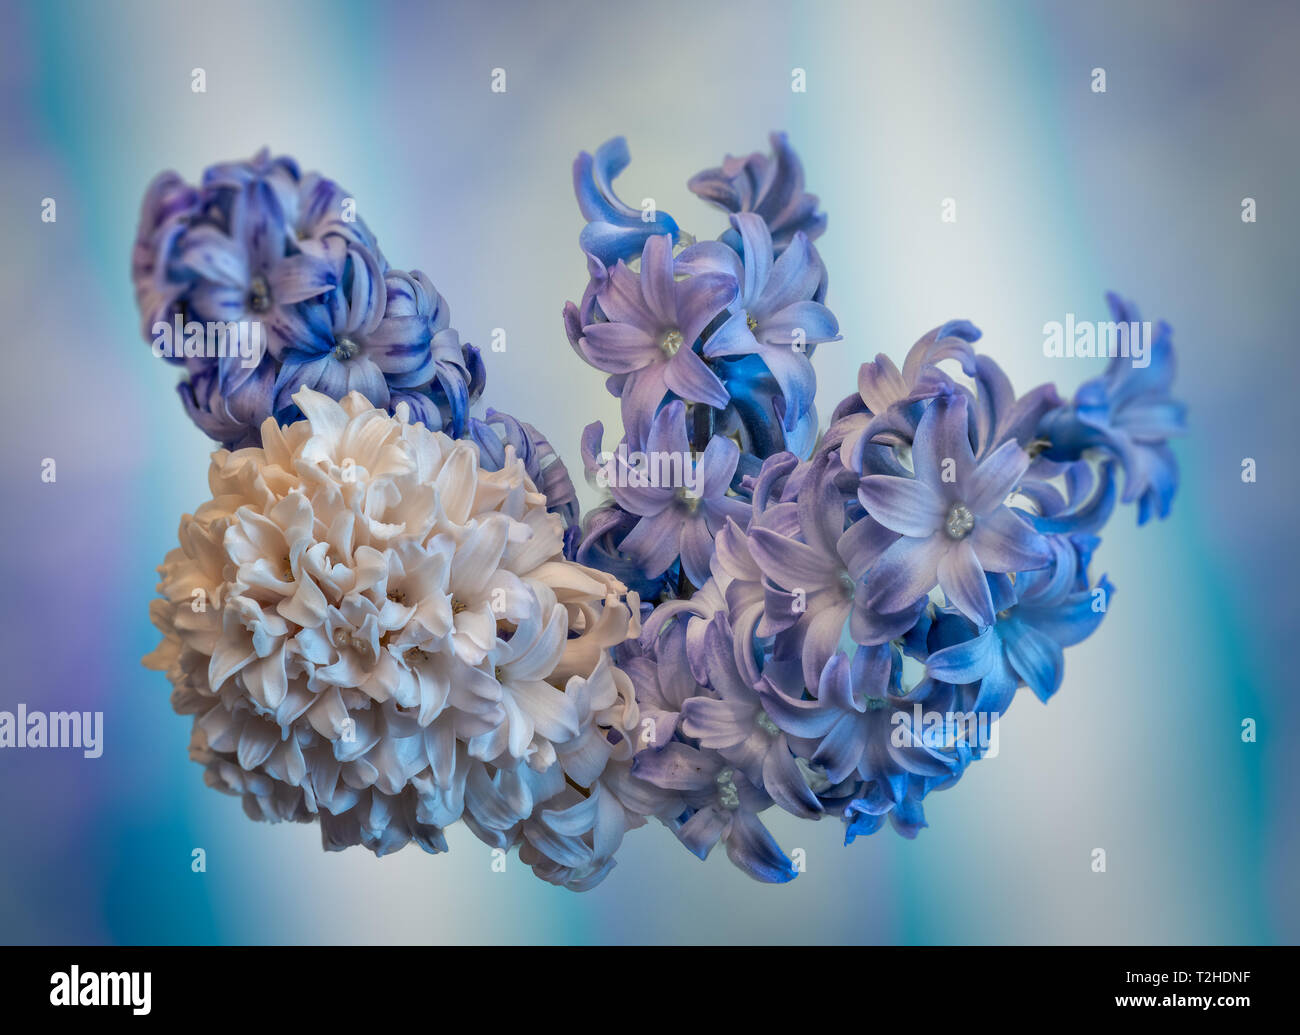 Kunst Stillleben lebhaften farbigen Makro von vier isolierte Weiß Violett Blau Hyazinthe Dolden/Blüten auf Blau strukturierten Hintergrund Stockfoto